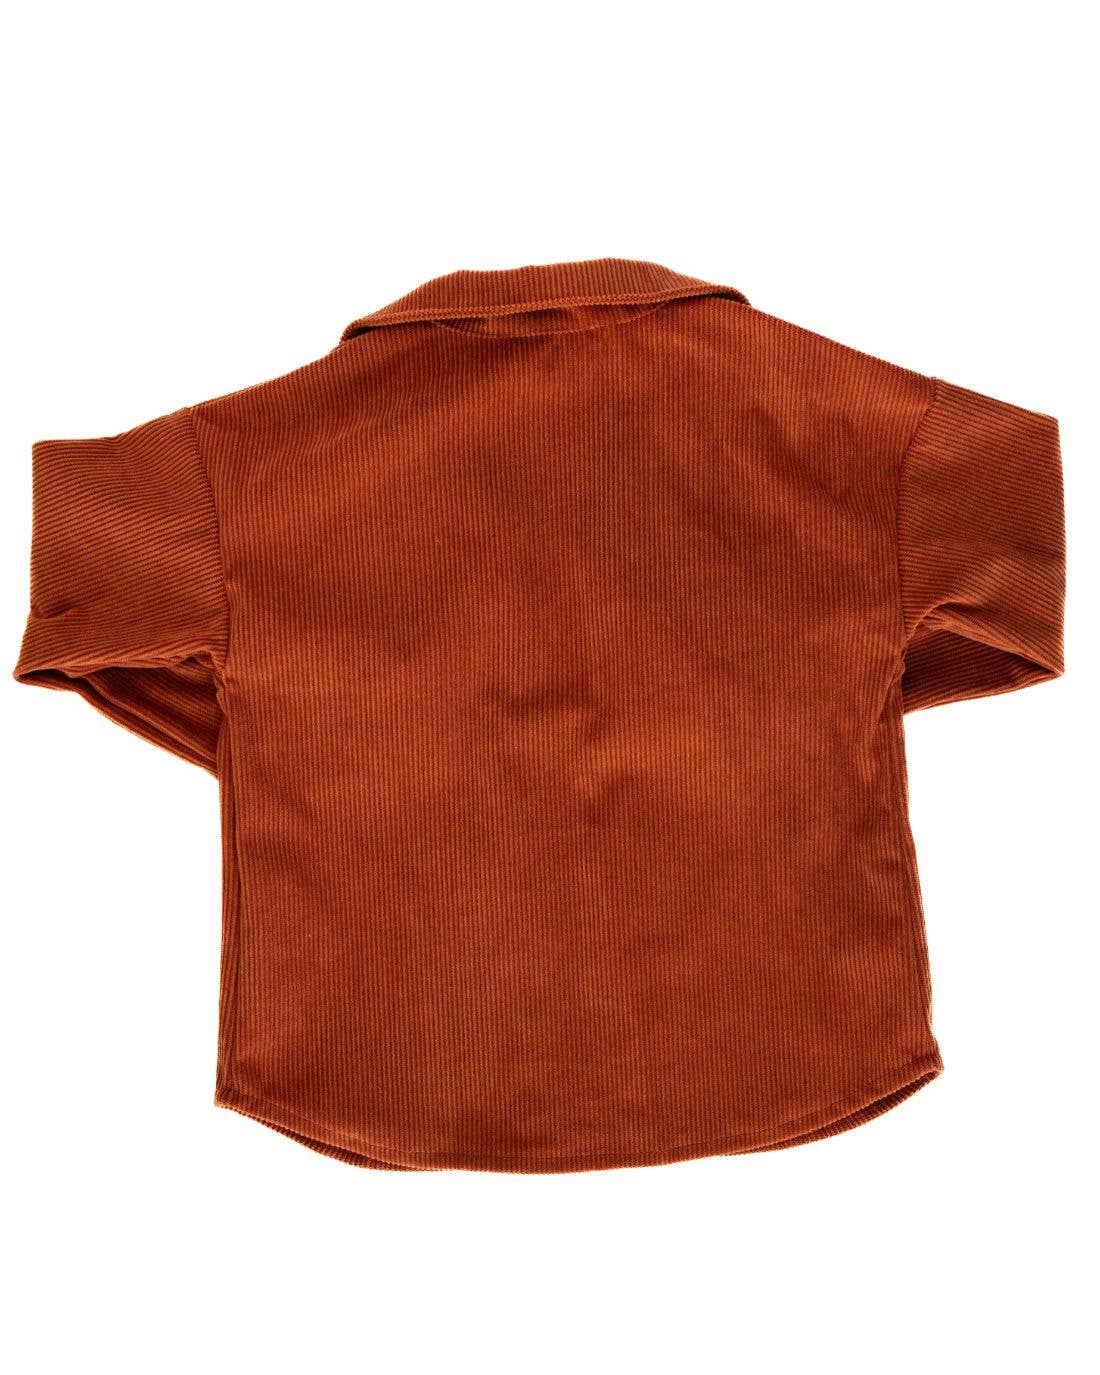 Kinsley Shirt Jacket - Clay Corduroy